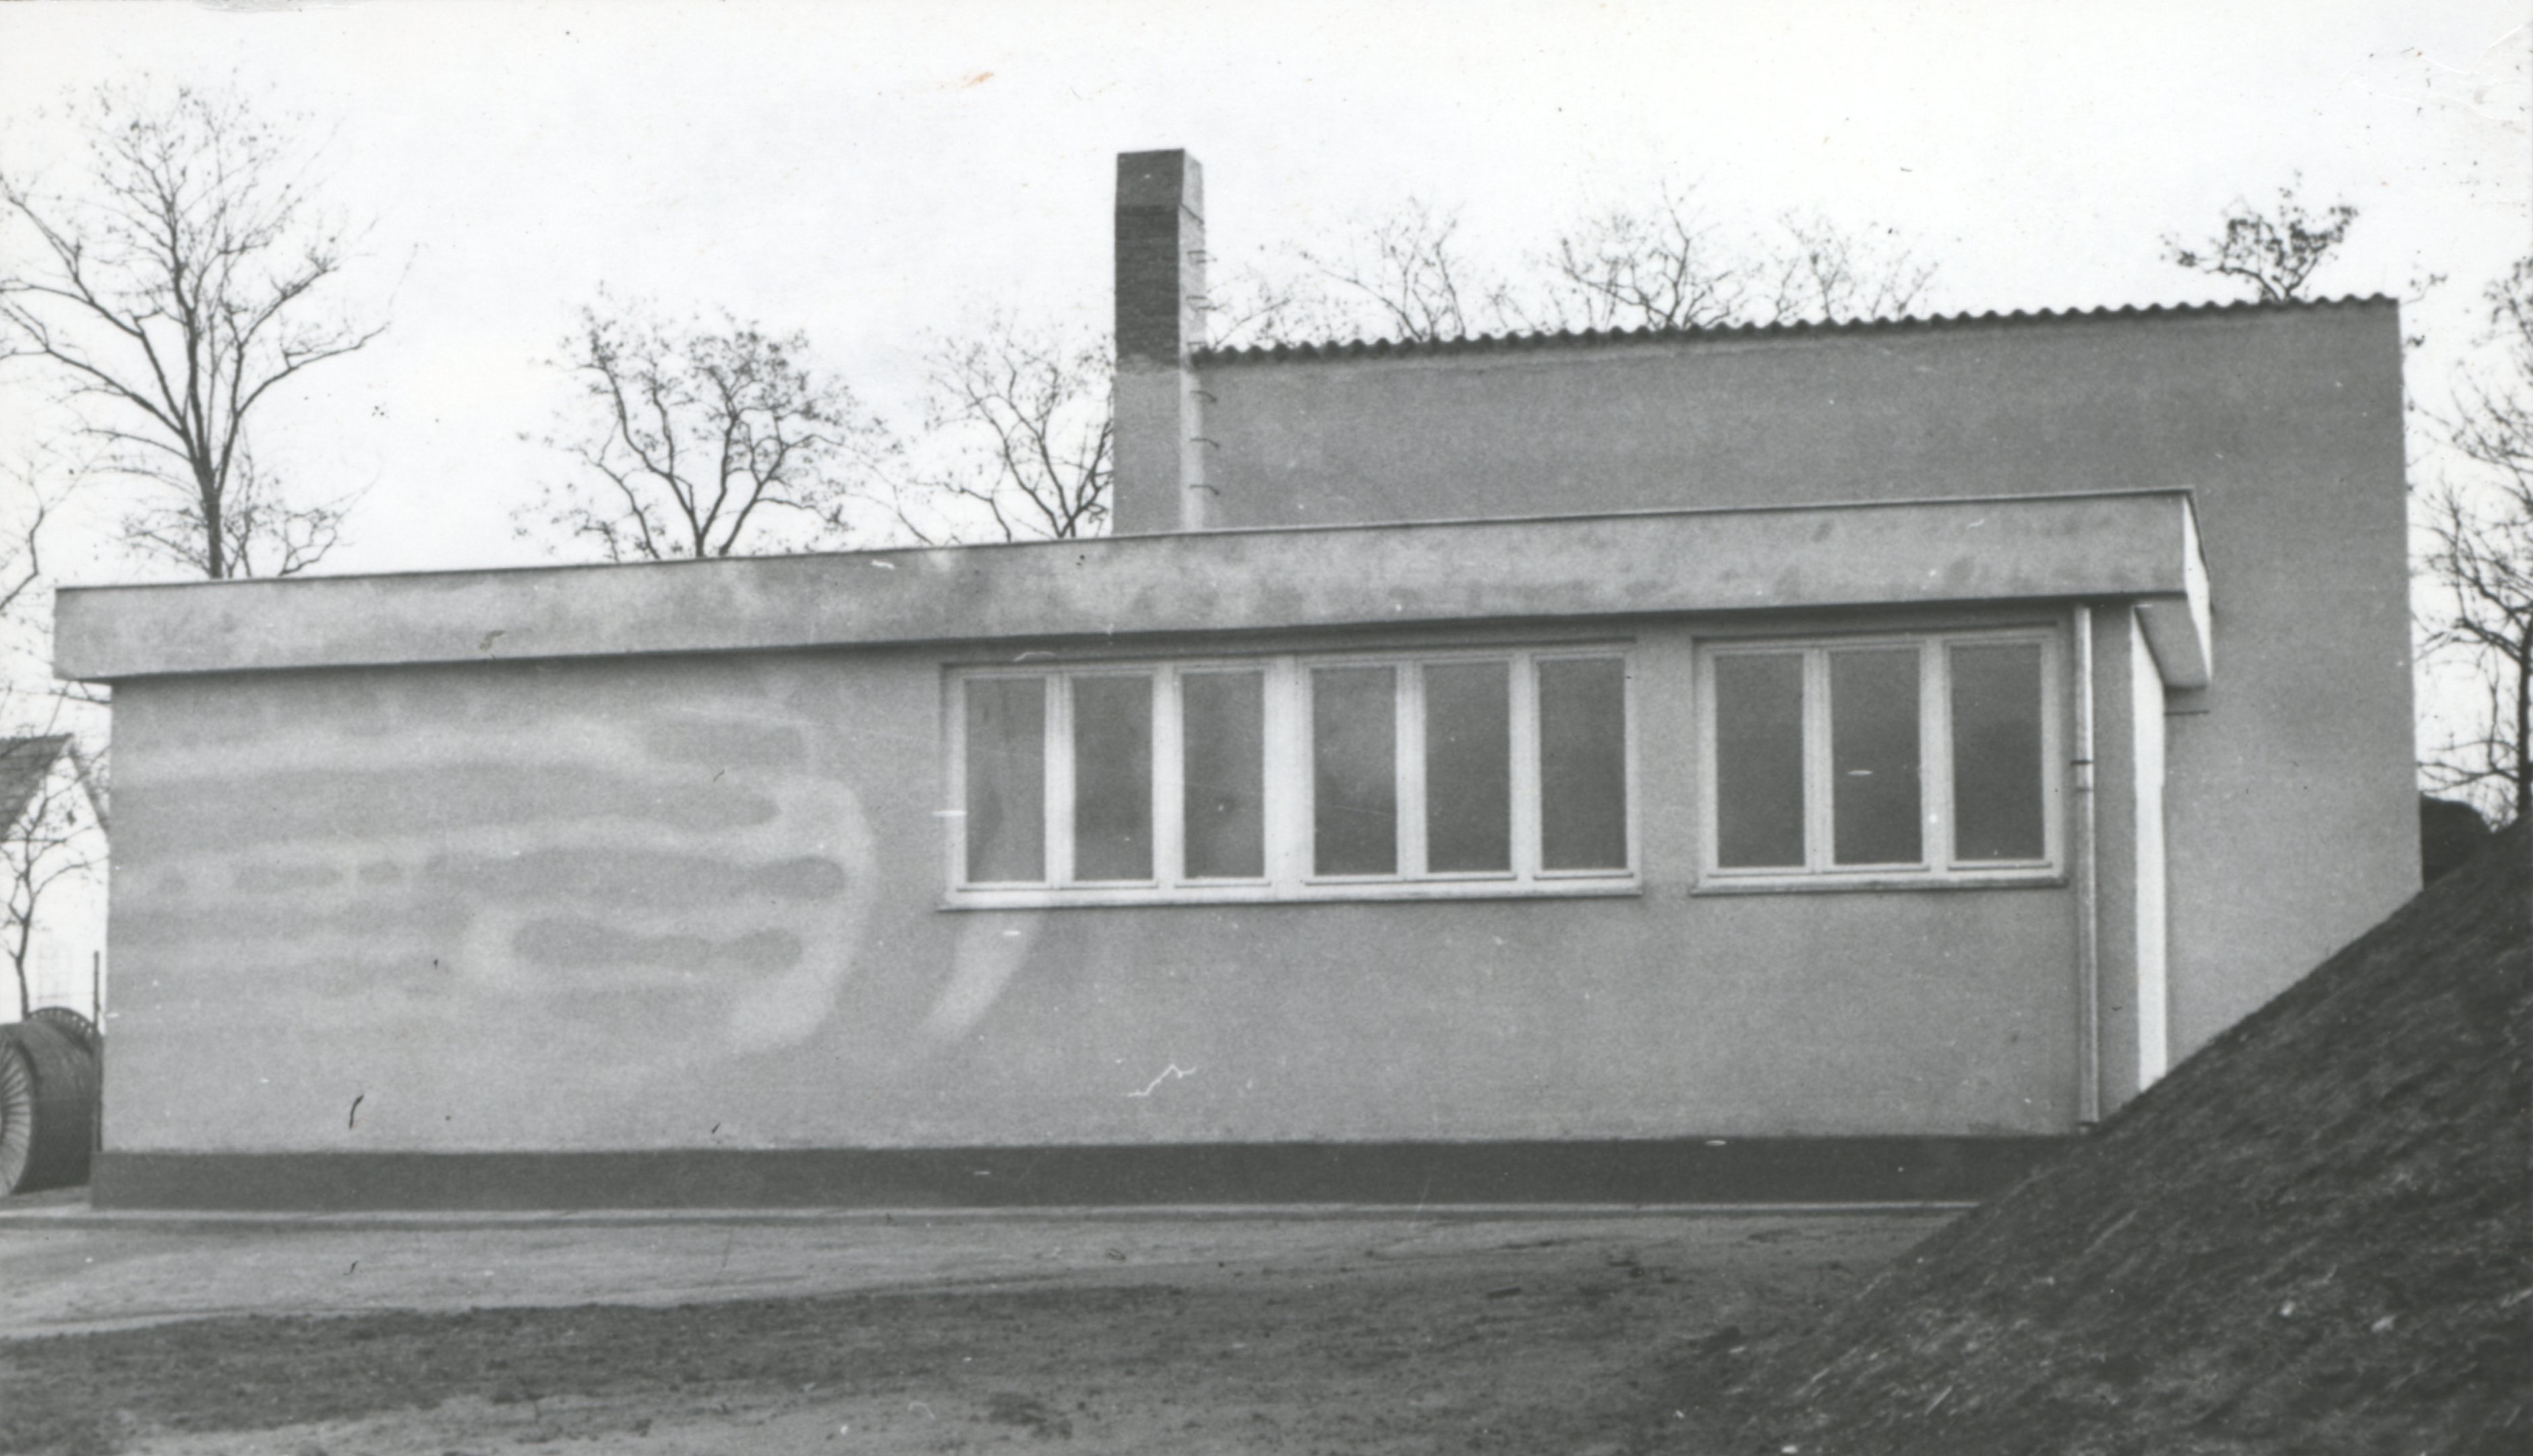 A Fonyódi Építésvezetőség által épített Balatonszárszói törpevízmű 300 m3-es köralaprajzú vasbeton víztároló medencéje (Magyar Környezetvédelmi és Vízügyi Múzeum - Duna Múzeum CC BY-NC-SA)